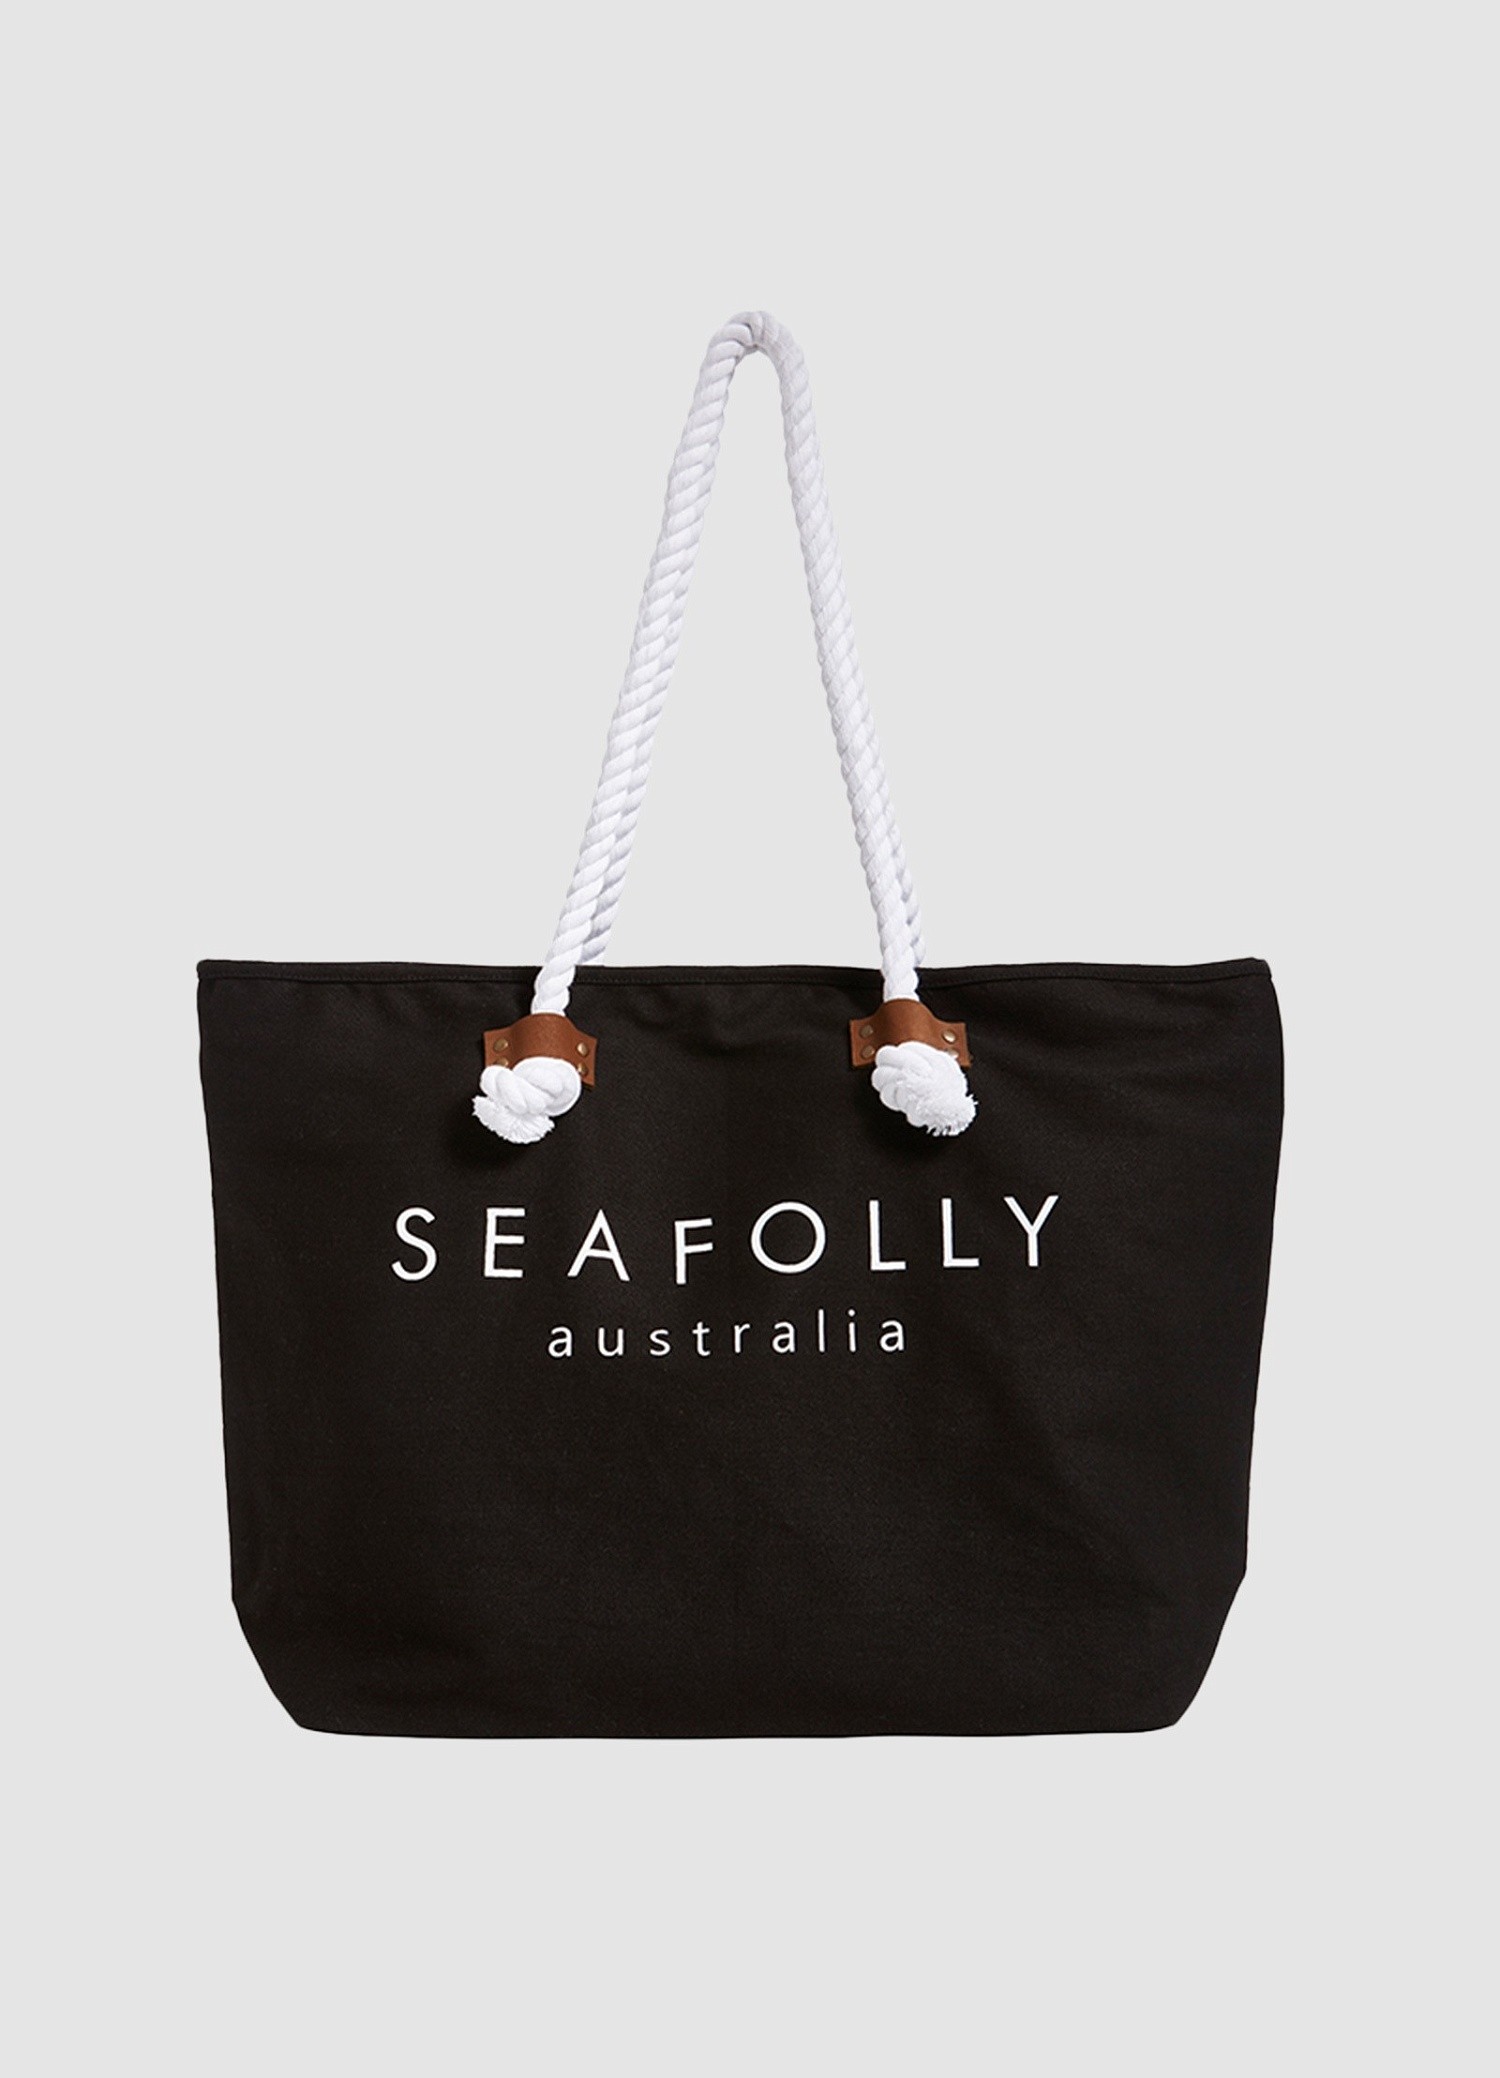 Пляжная сумка Seafolly 71147-BG 4 800 руб - купить в шоуруме, магазине, доставка с примеркой по России, Москве